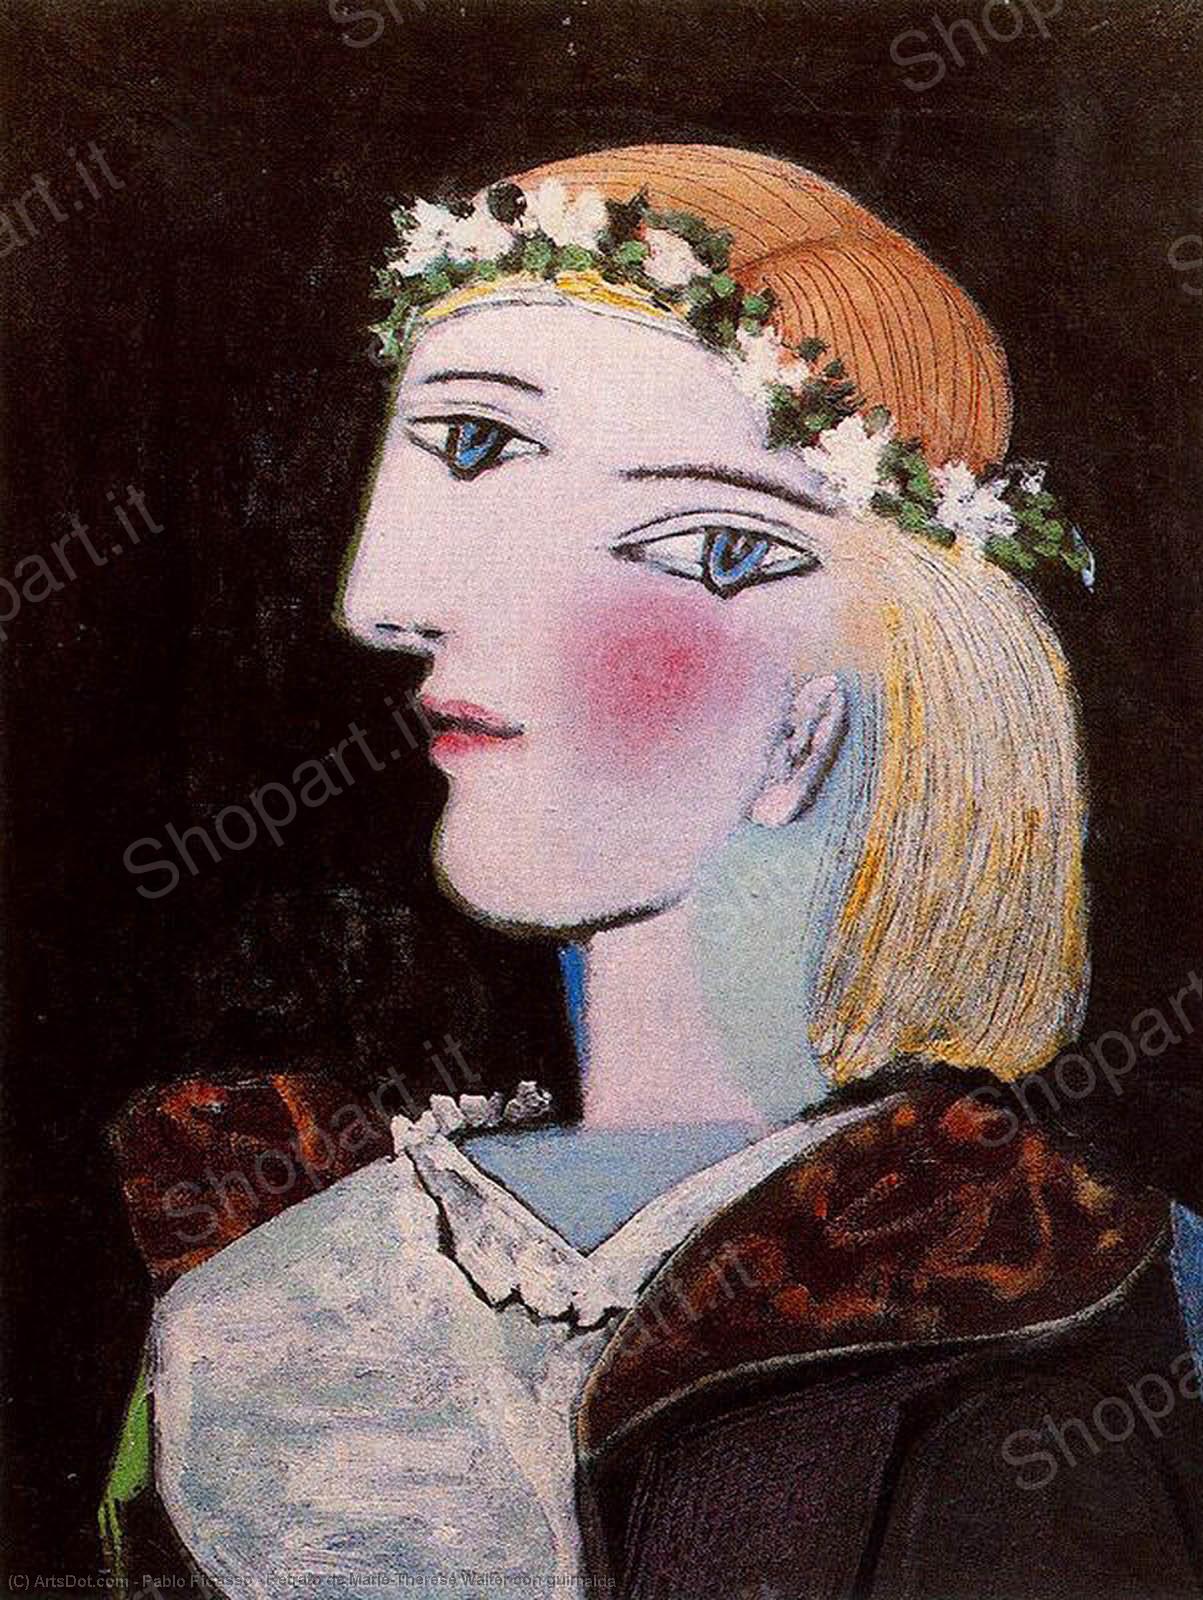 WikiOO.org - Encyclopedia of Fine Arts - Maleri, Artwork Pablo Picasso - Retrato de Marie-Thérèse Walter con guirnalda